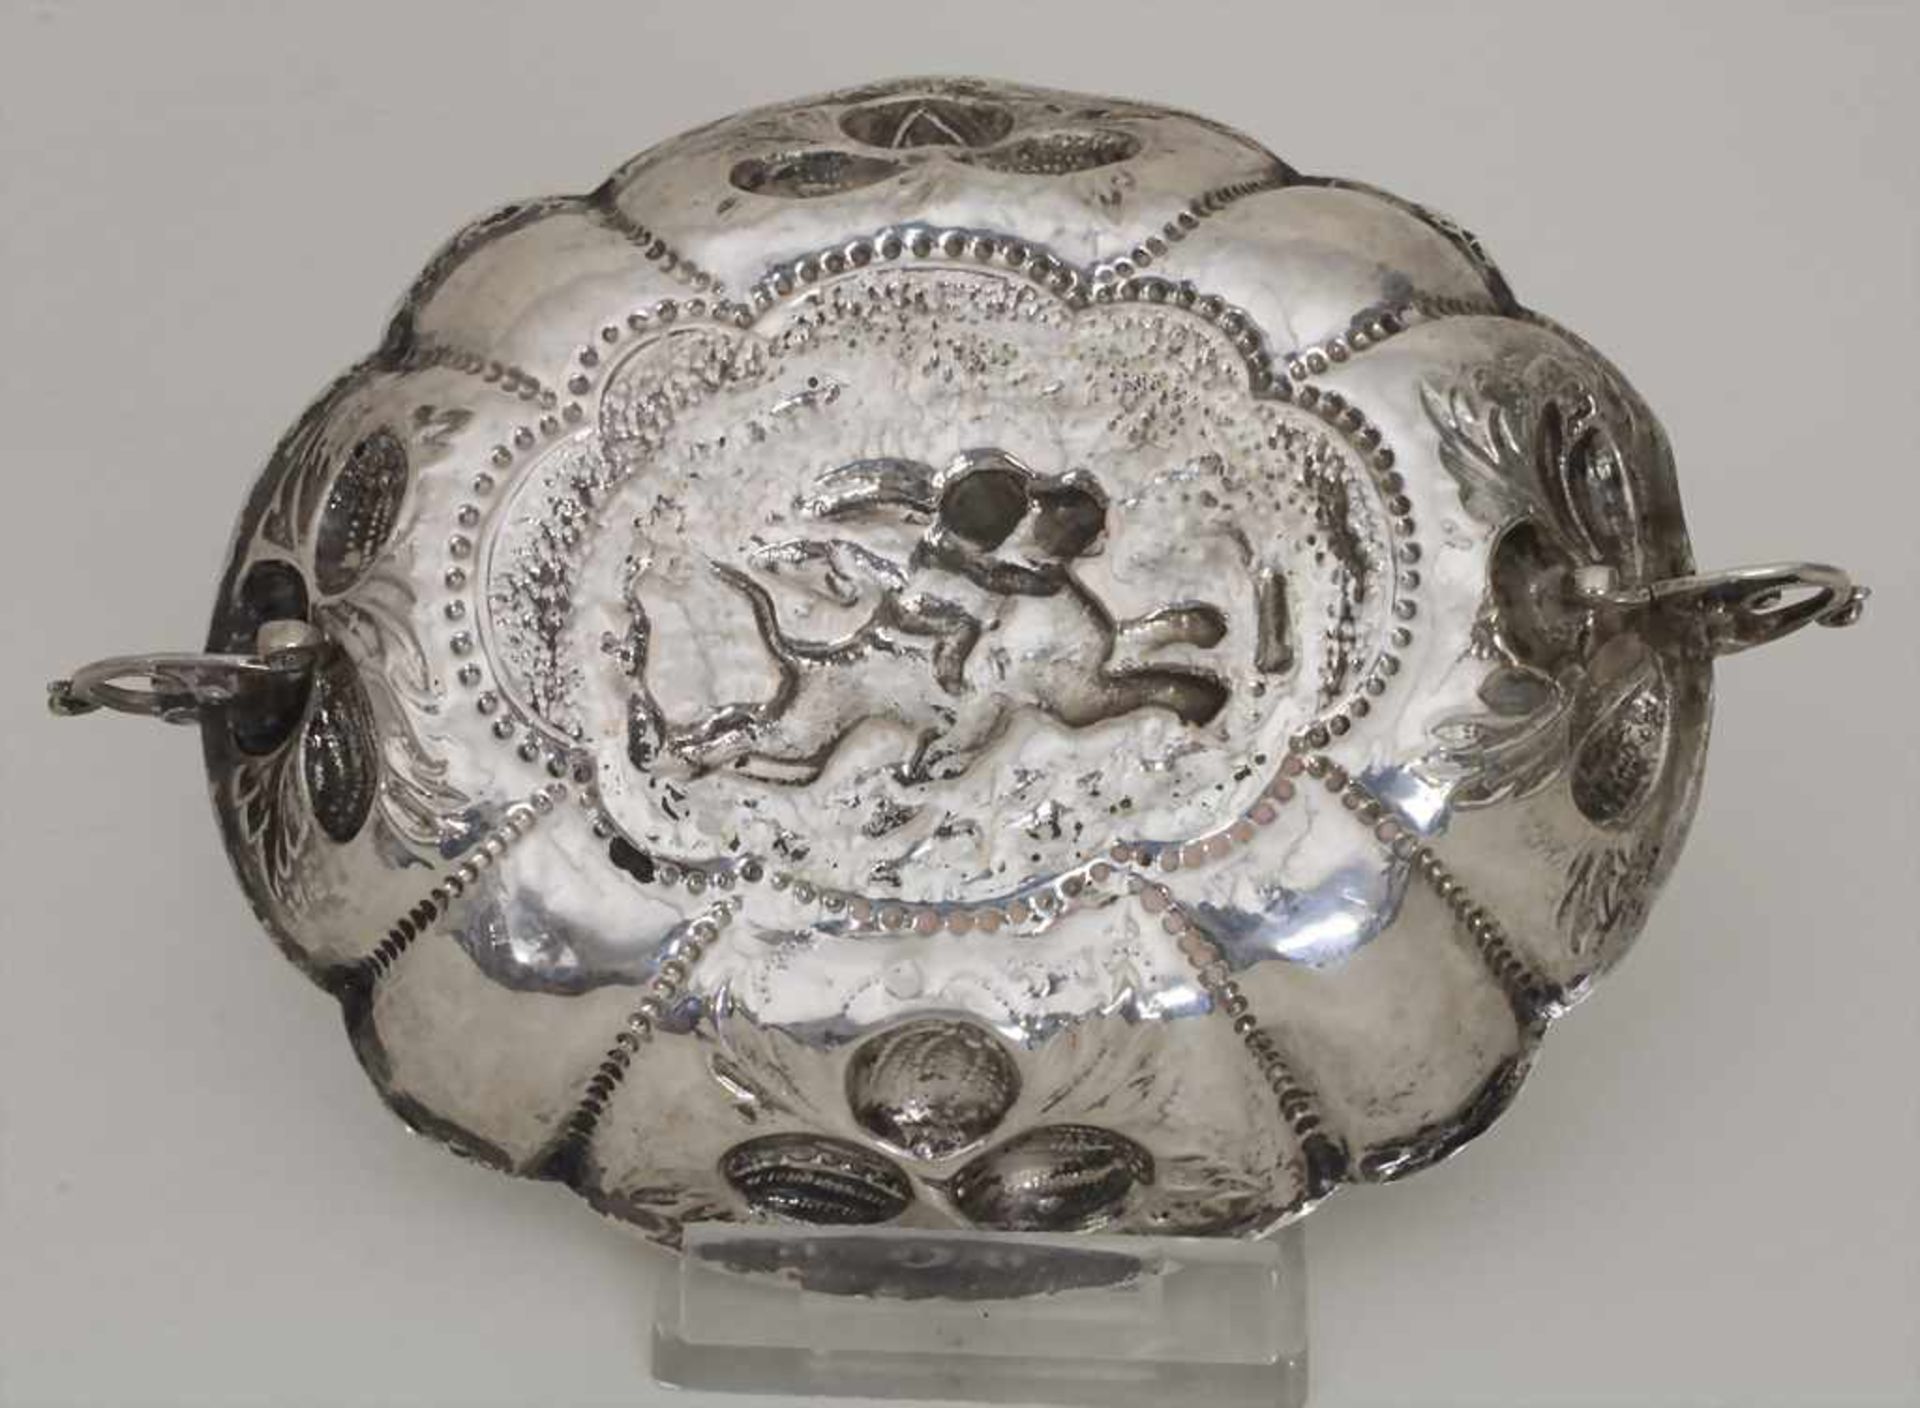 Etrog Schale / An Etrog bowl, Nürnberg, 18. Jh.Material: Silber 13 Lot,Punzierung: Beschaumarke, - Image 2 of 4